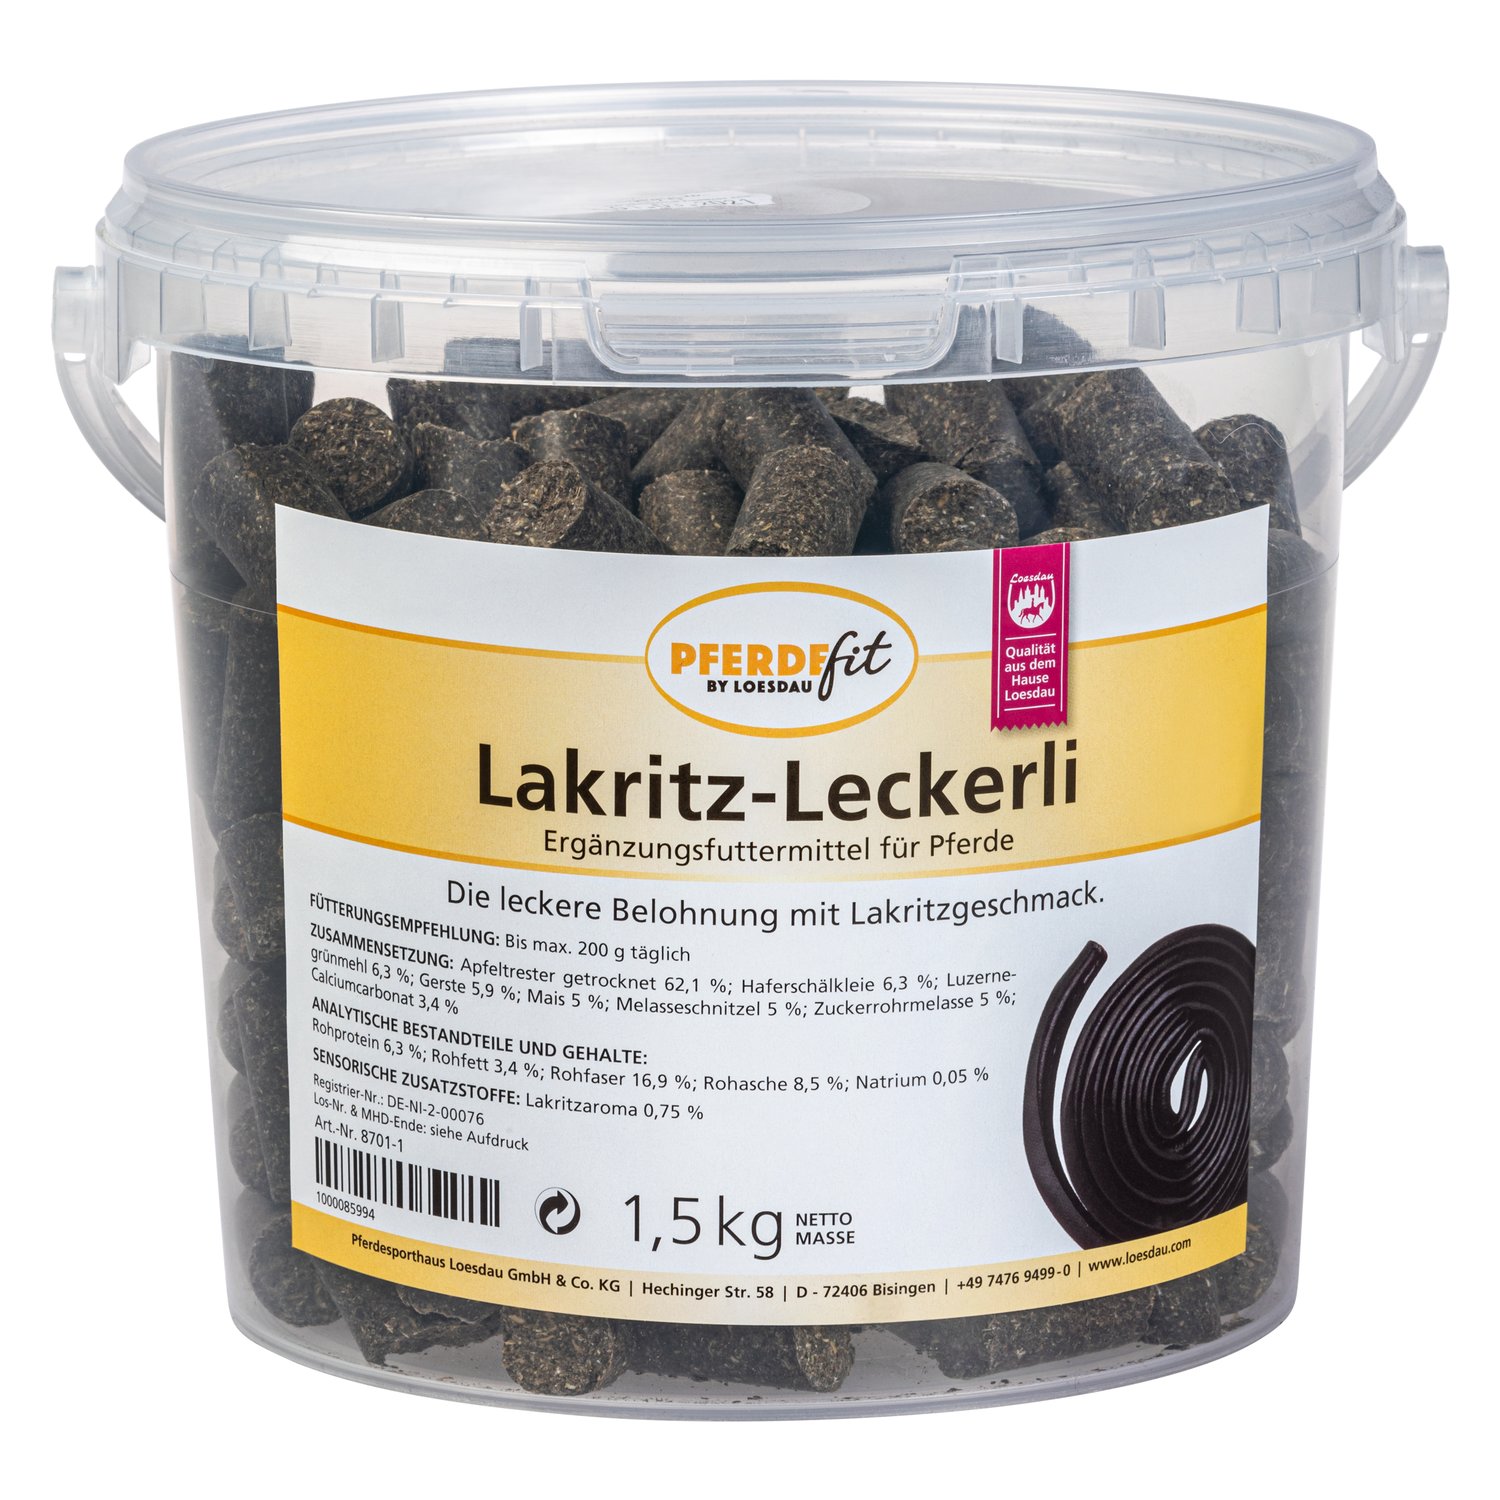 PFERDEfit by Loesdau Lakritz-Leckerli 1,5 kg